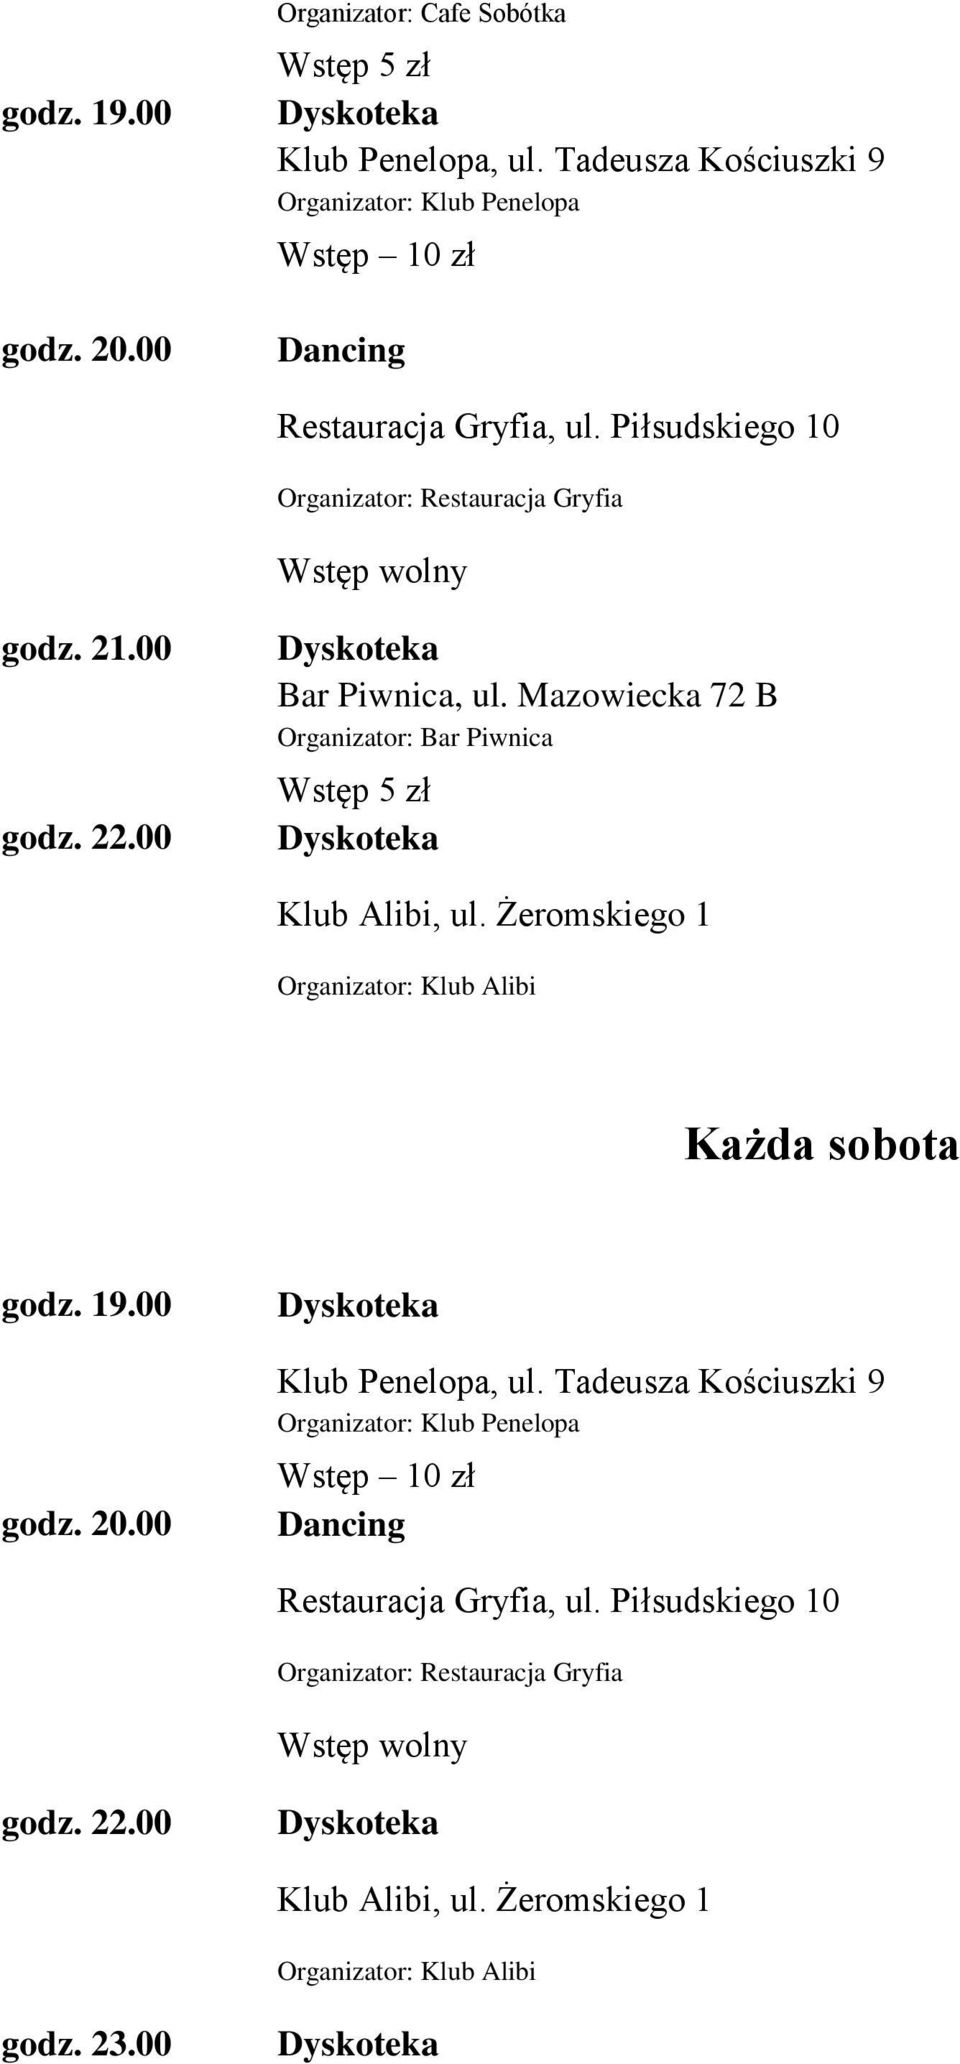 Mazowiecka 72 B Organizator: Bar Piwnica Wstęp 5 zł Dyskoteka Klub Alibi, ul. Żeromskiego 1 Organizator: Klub Alibi Każda sobota godz. 19.00 godz. 20.